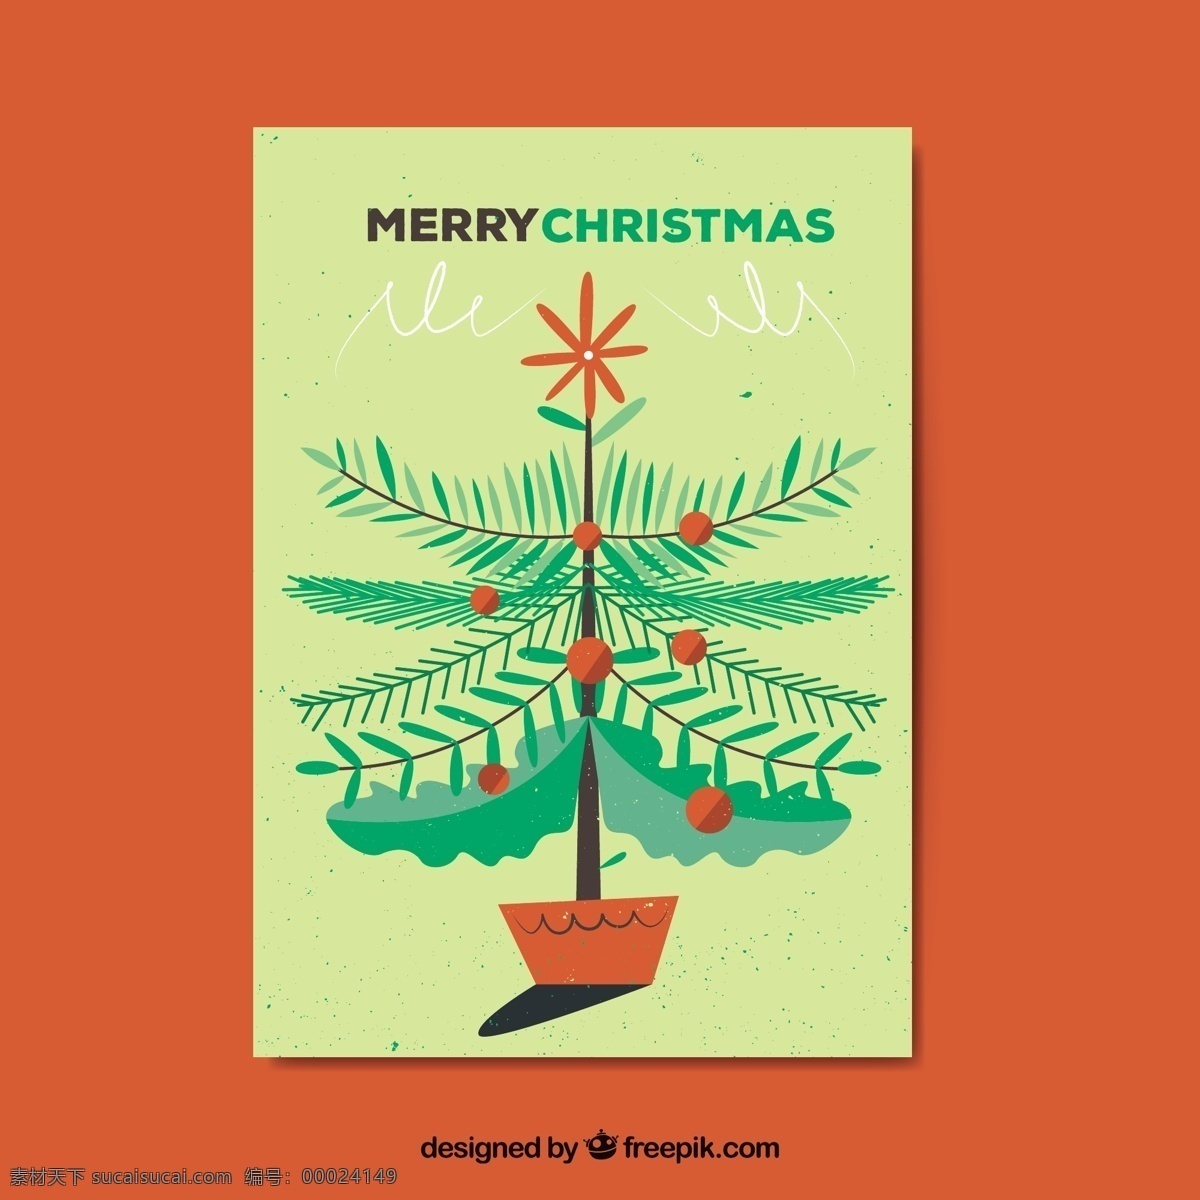 圣诞树 挂件 黄卡 圣诞卡 冬天快乐 圣诞 庆祝 节日 黄色 节日快乐 祝福 节日的问候 小玩意 季节 快乐 问候 红色